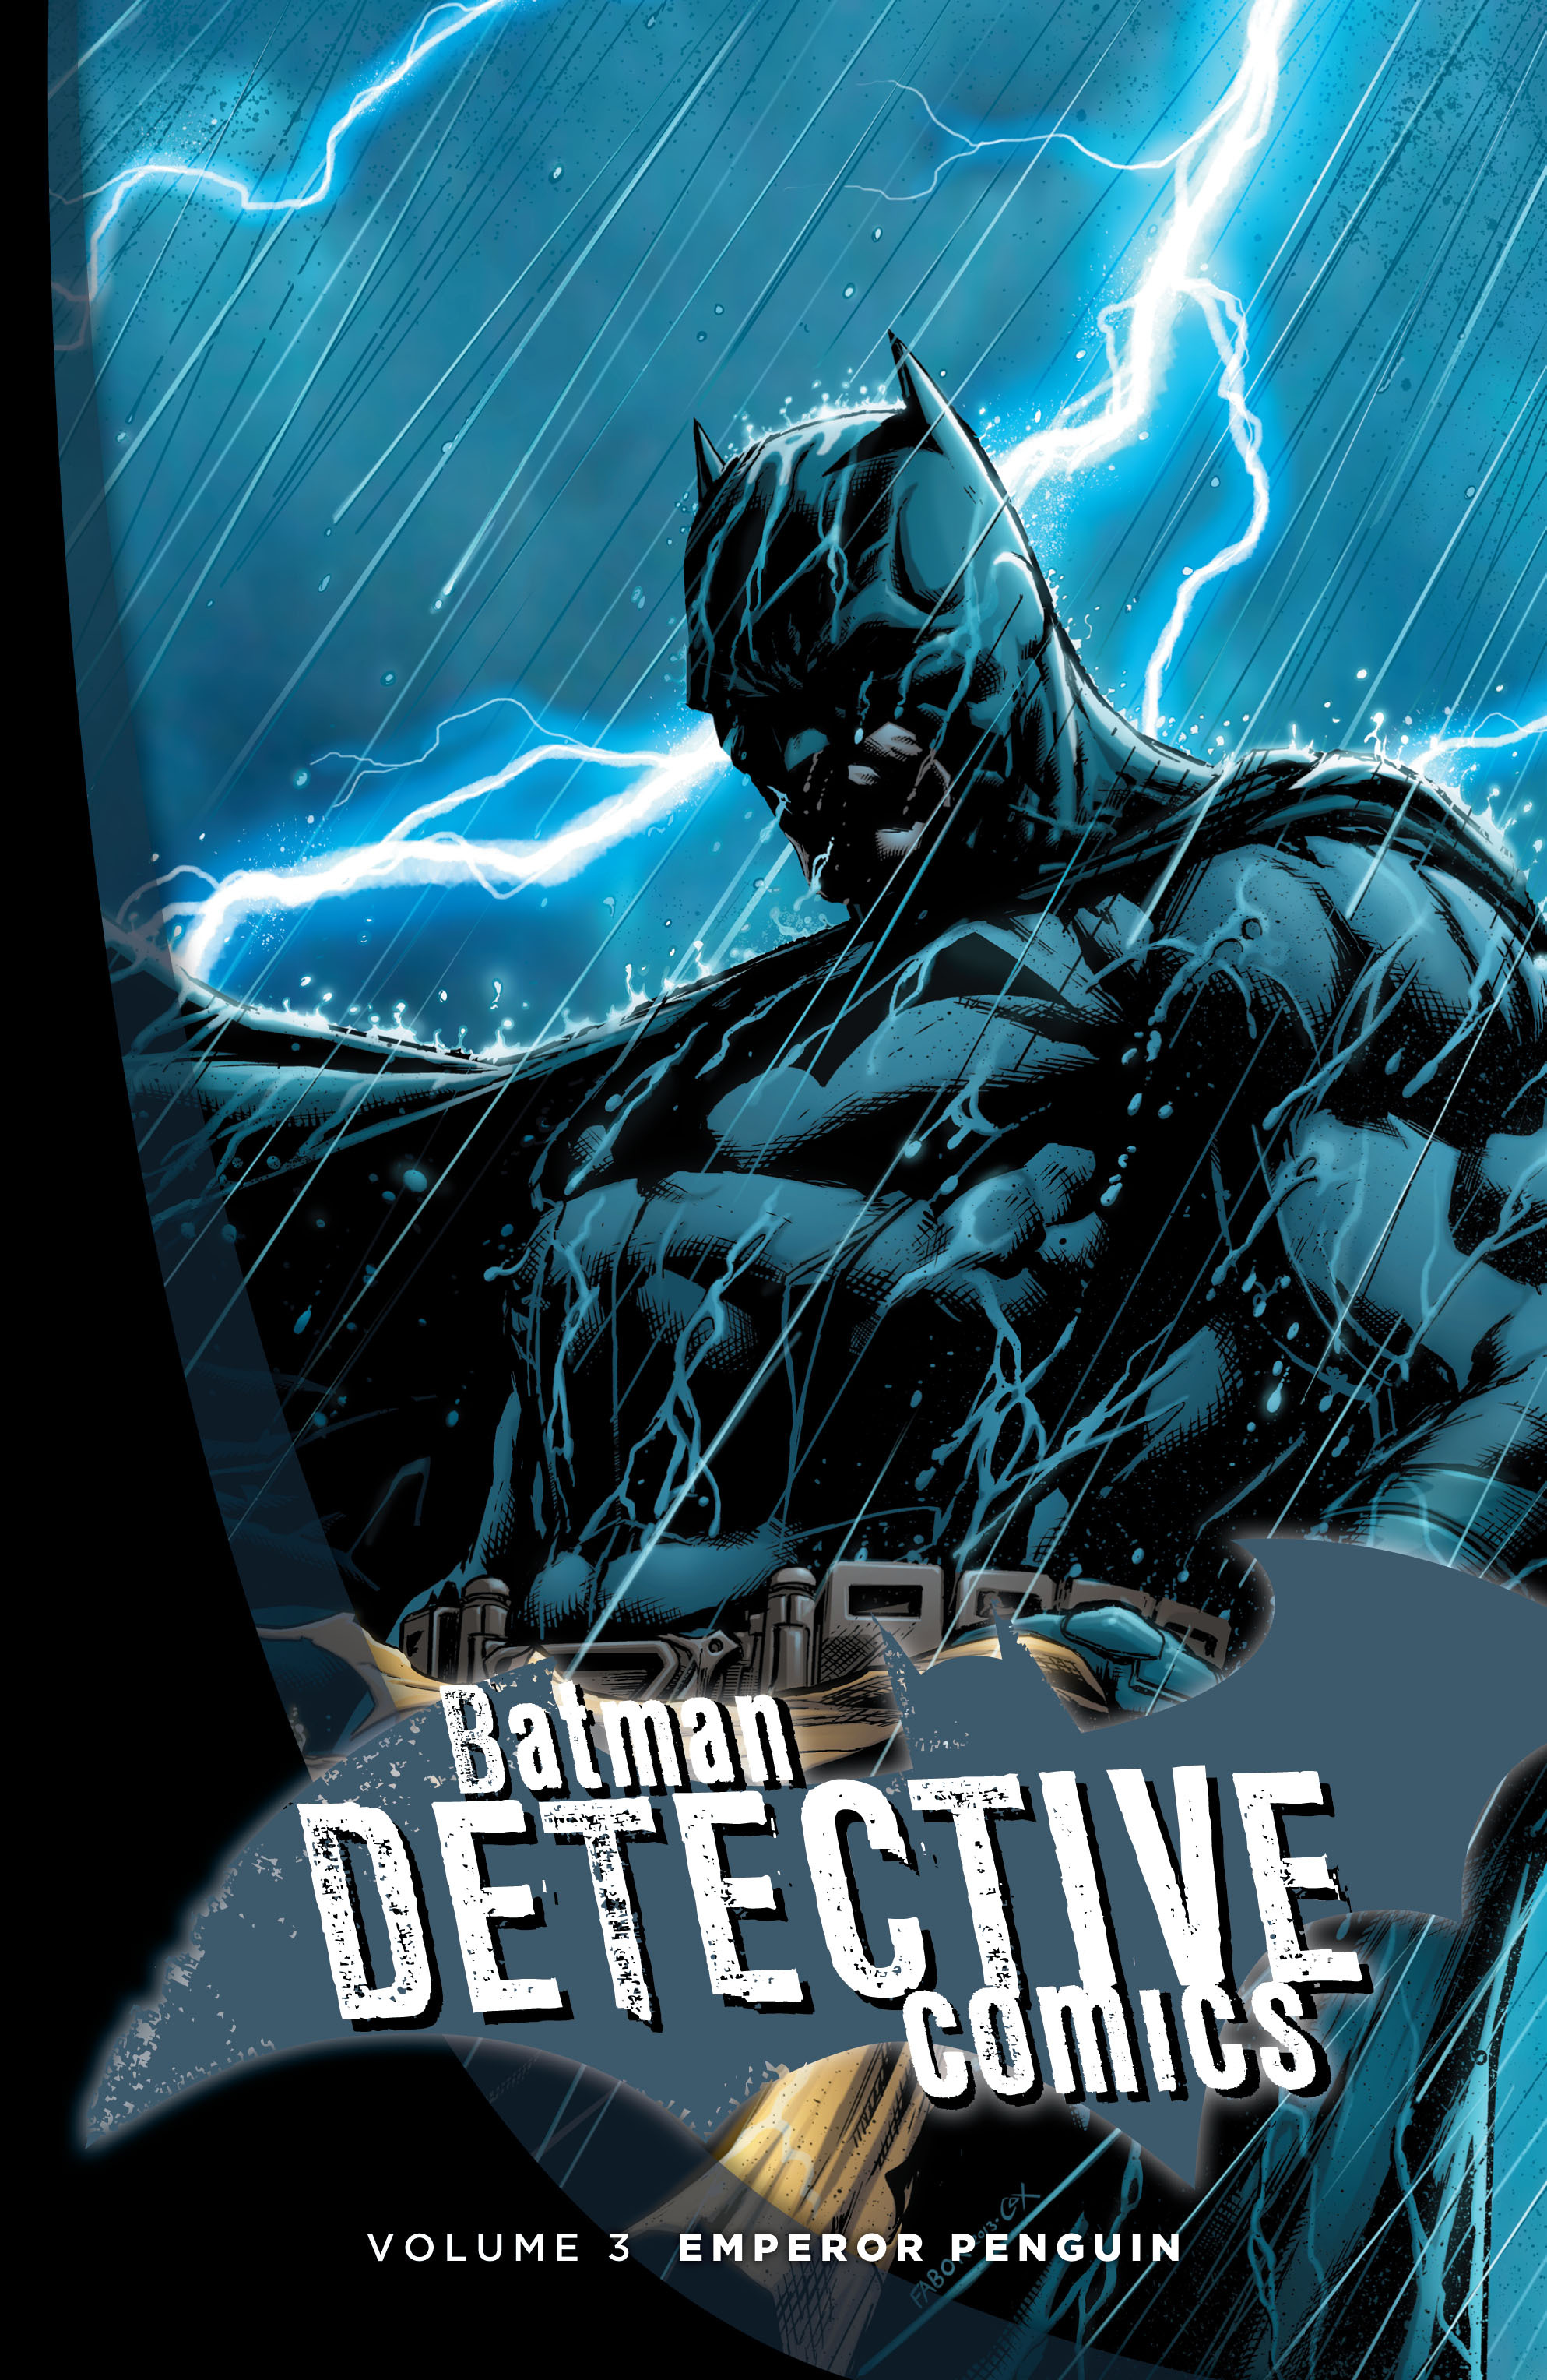 Read online Batman: Detective Comics comic -  Issue # TPB 3 - 2